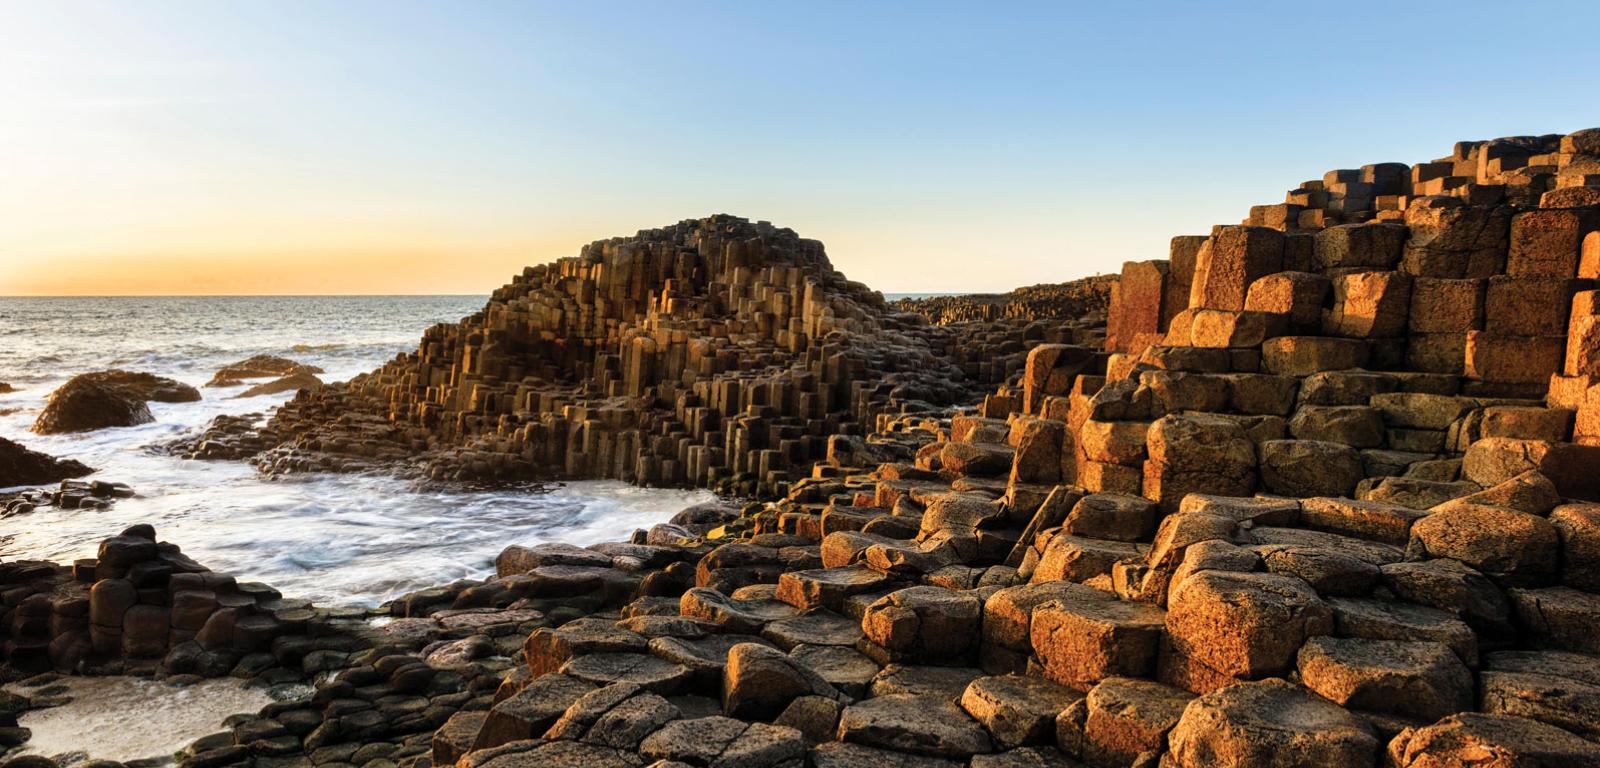 Grobla Olbrzyma w Irlandii Północnej jest częścią Północnoatlantyckiej Prowincji Wulkanicznej